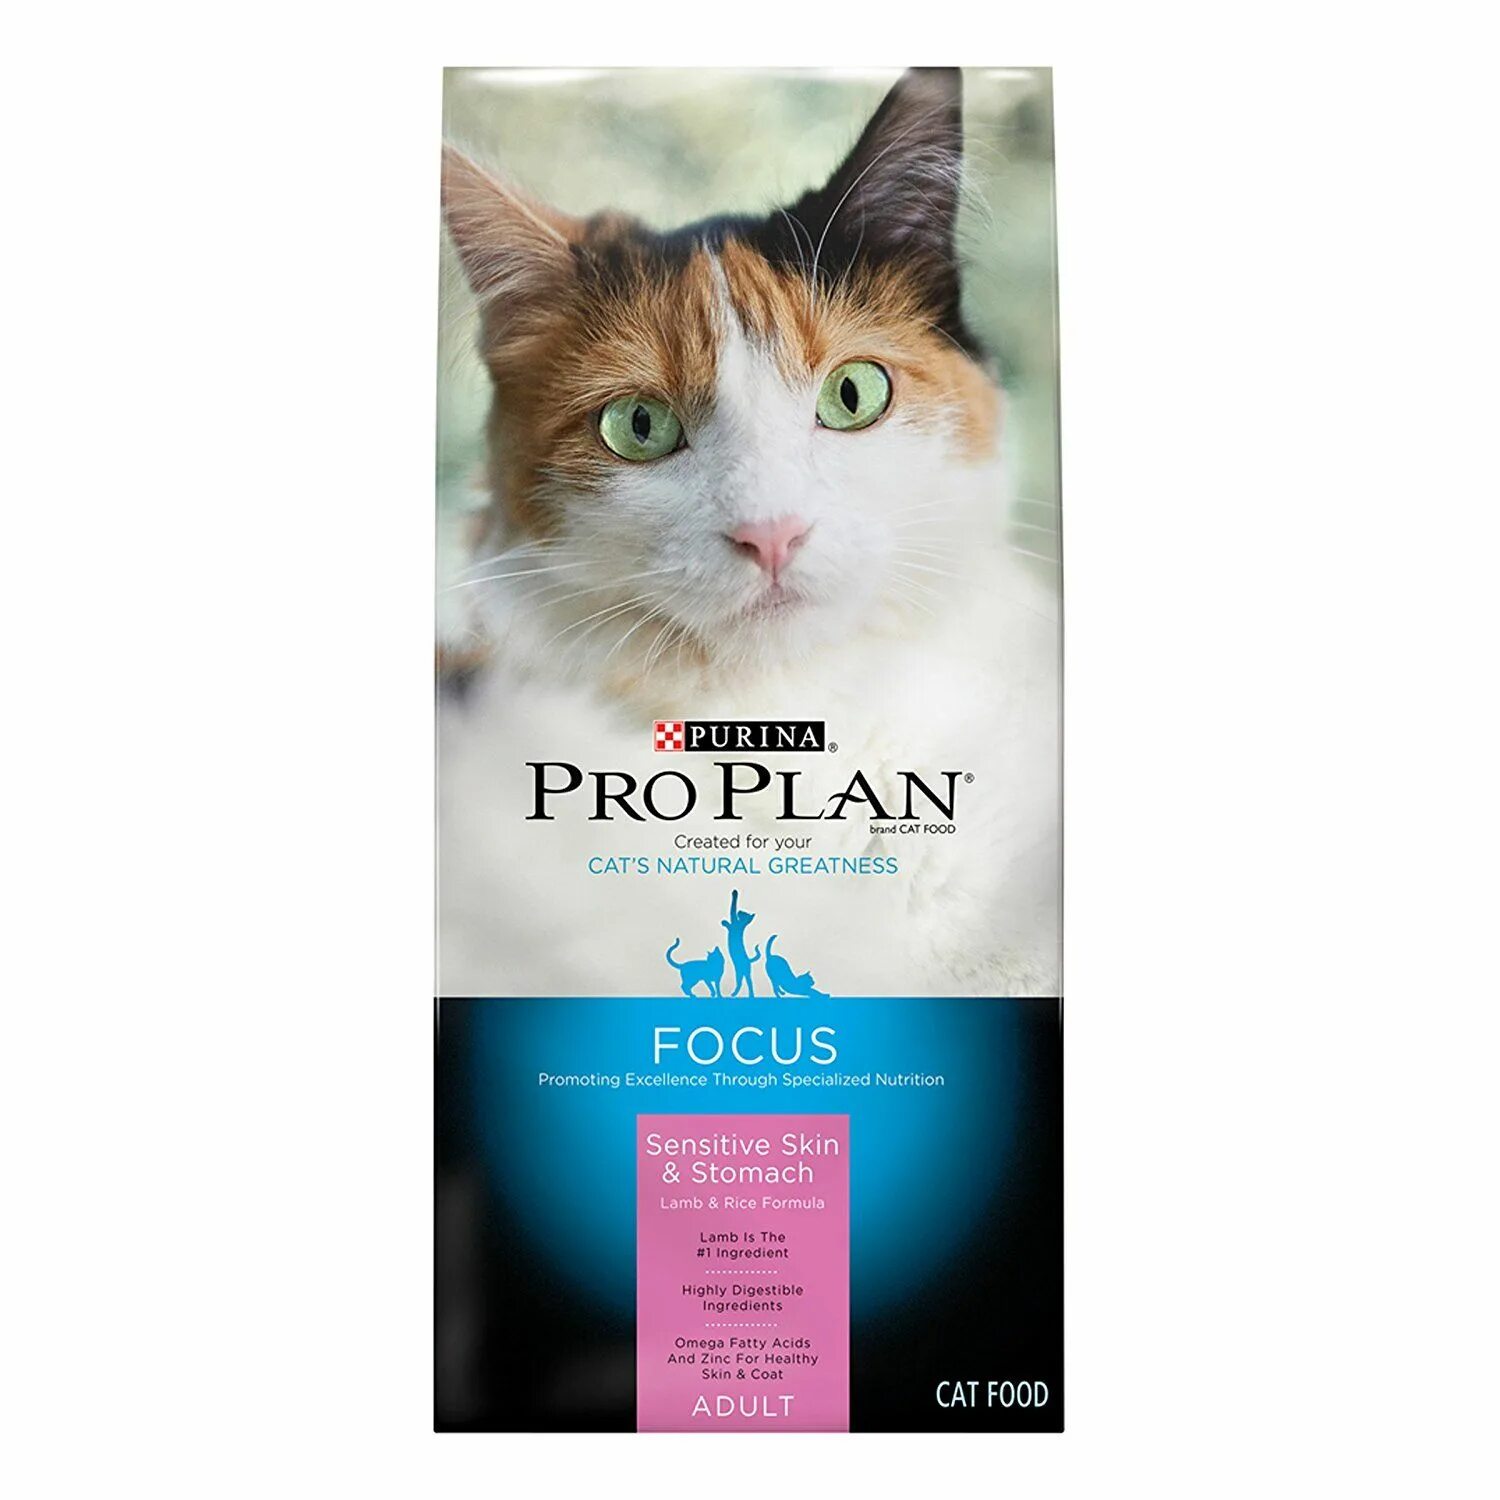 Пурина Сенситив для кошек. Sensitive PROPLAN корм для кошки. Purina Pro Plan sensitive Skin для кошек. Sensitive Lamb корм для кошек. Pro plan 7 для кошек